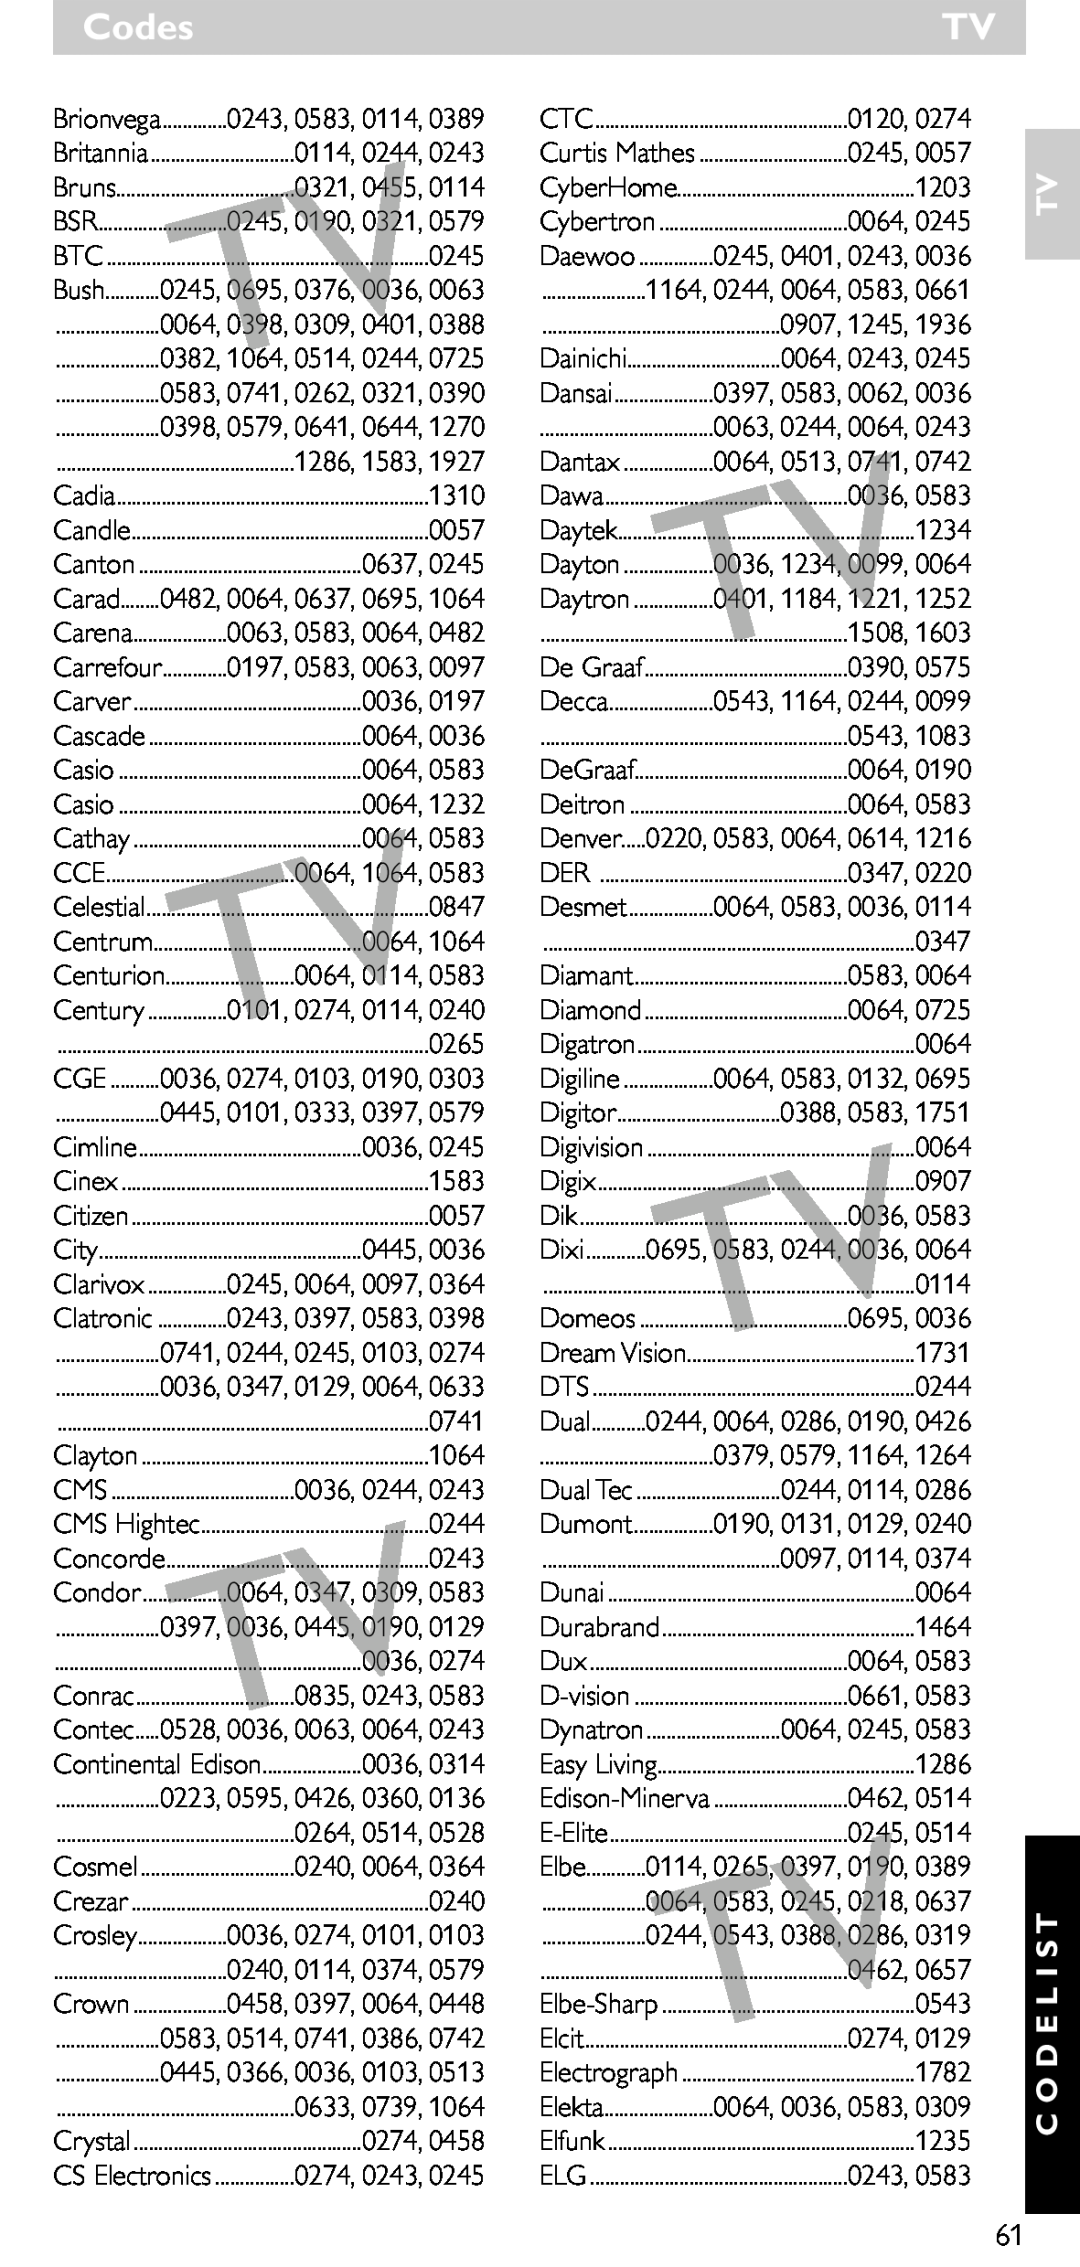 Philips SRU 5020/86 manual Codes, Tv C O D E L I S T, 0114, 0244, 0321, 0455, Carrefour 